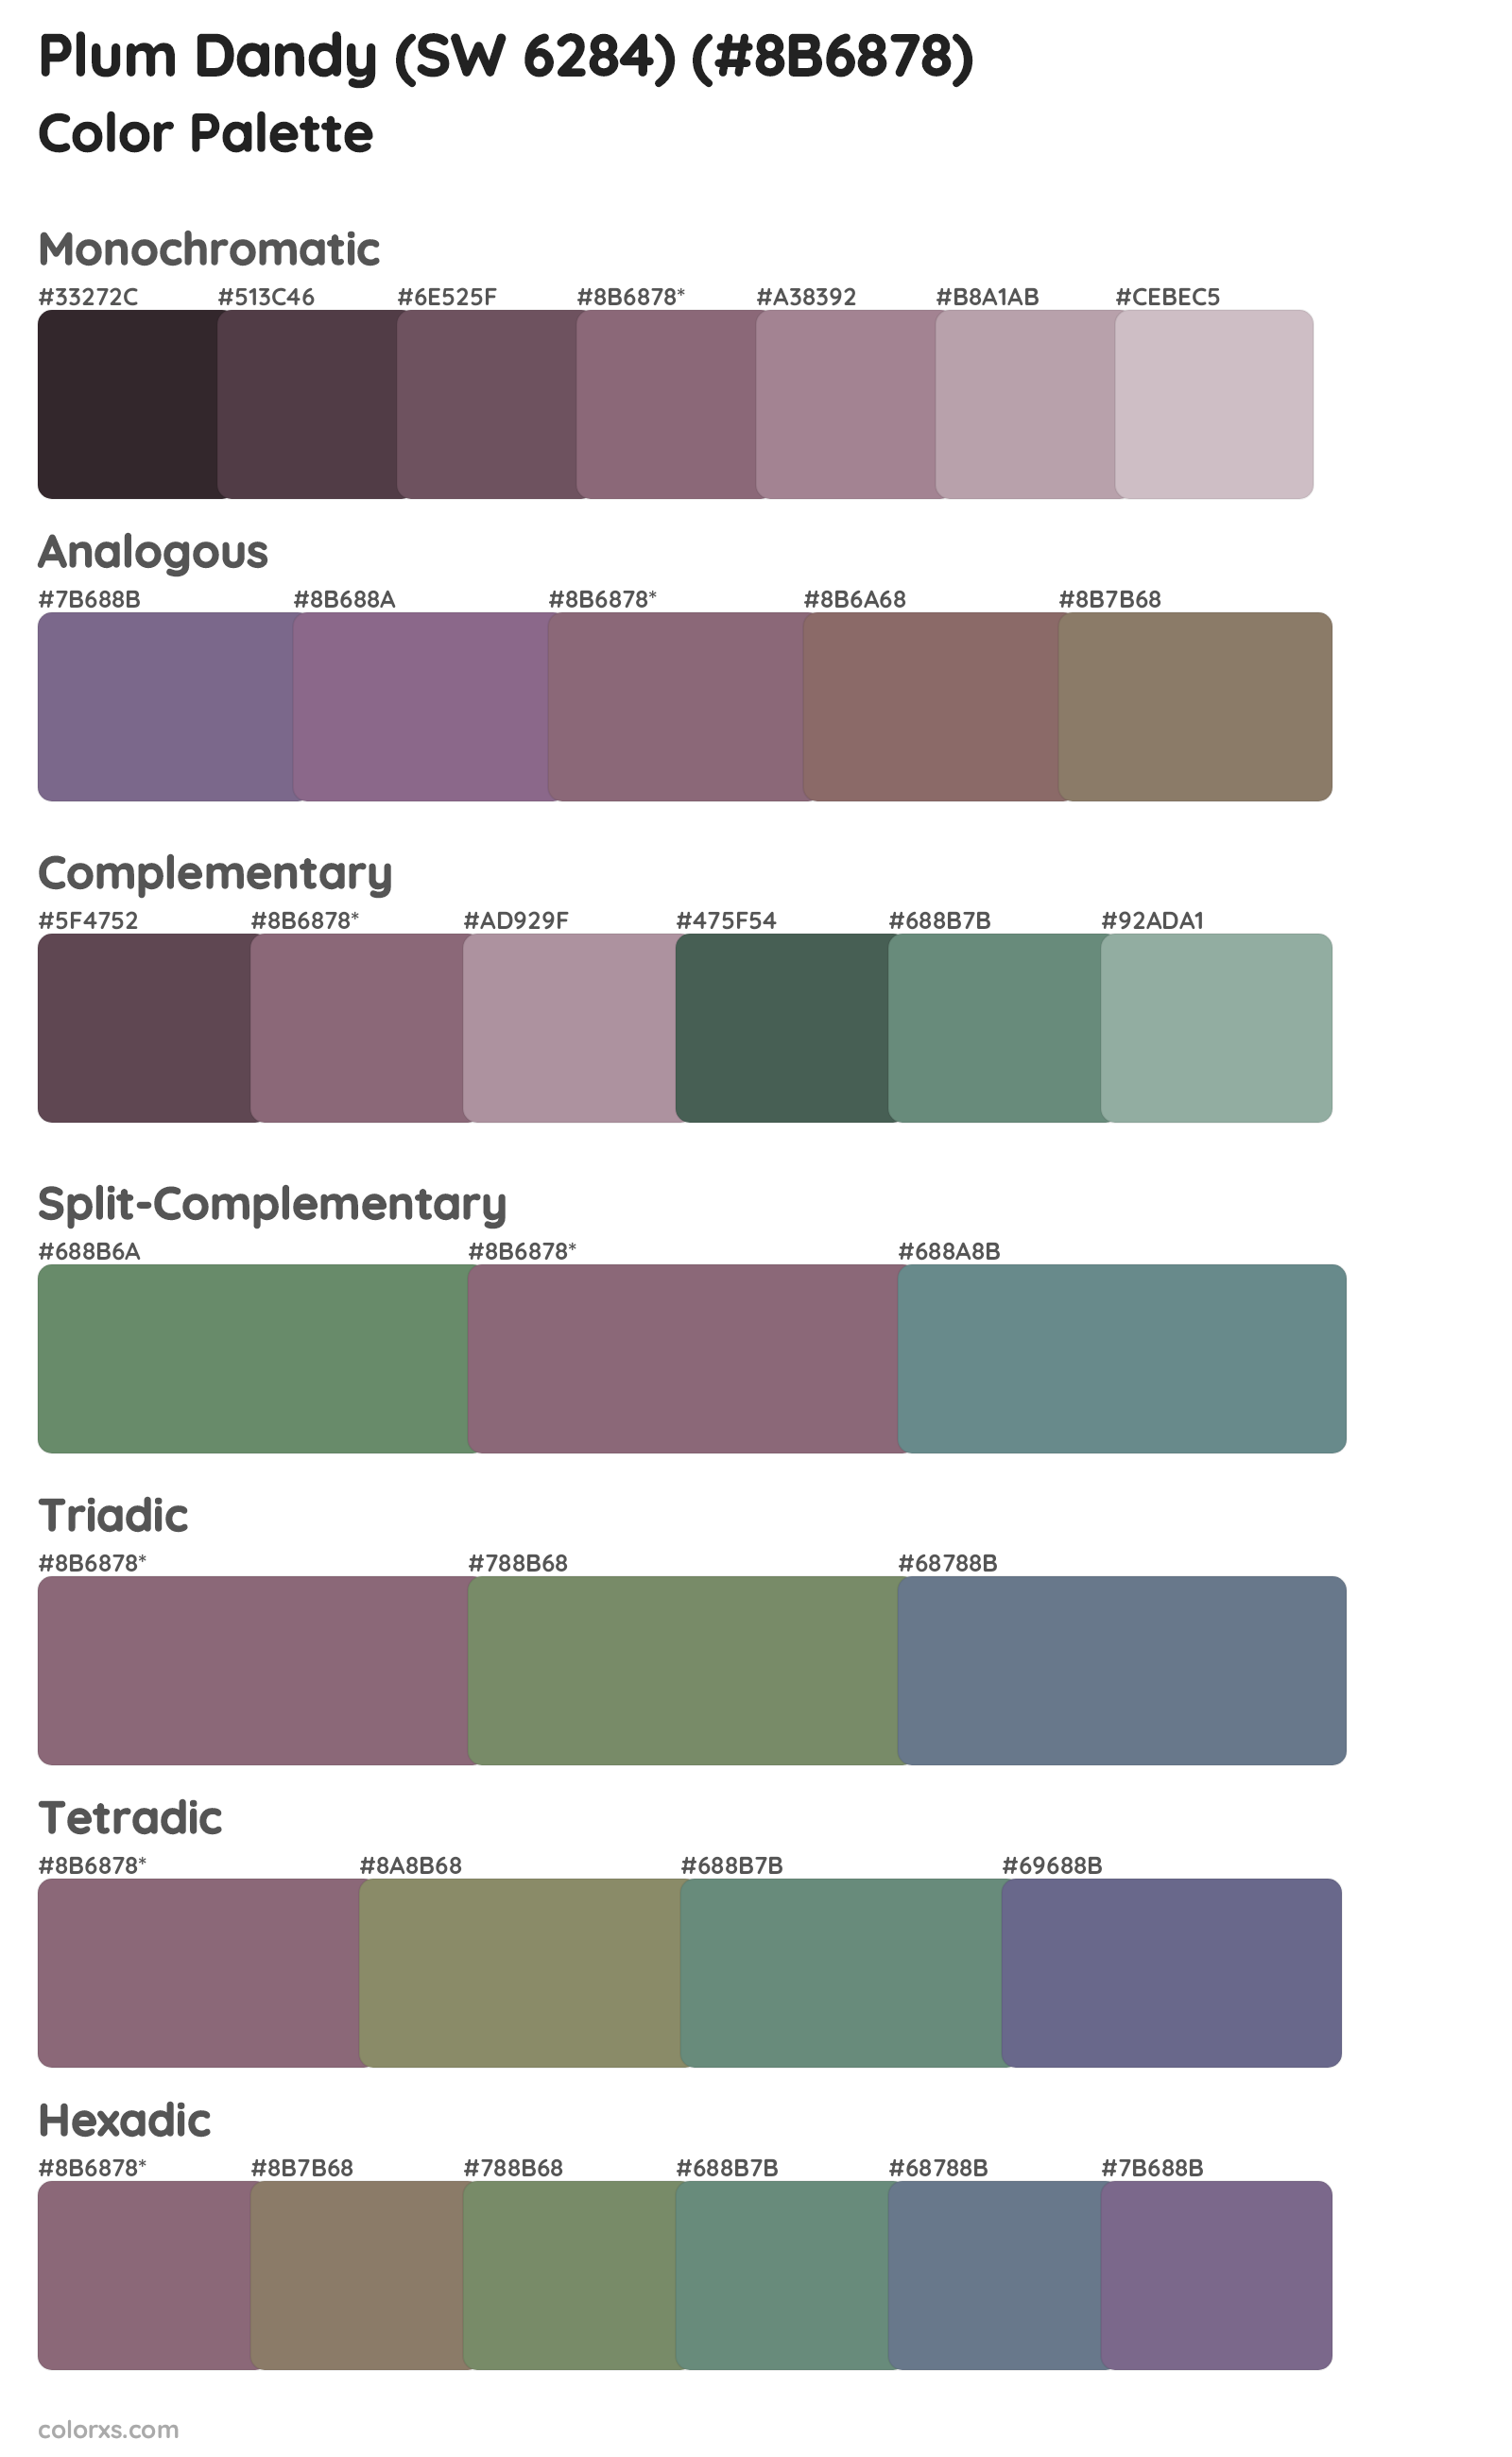 Plum Dandy (SW 6284) Color Scheme Palettes